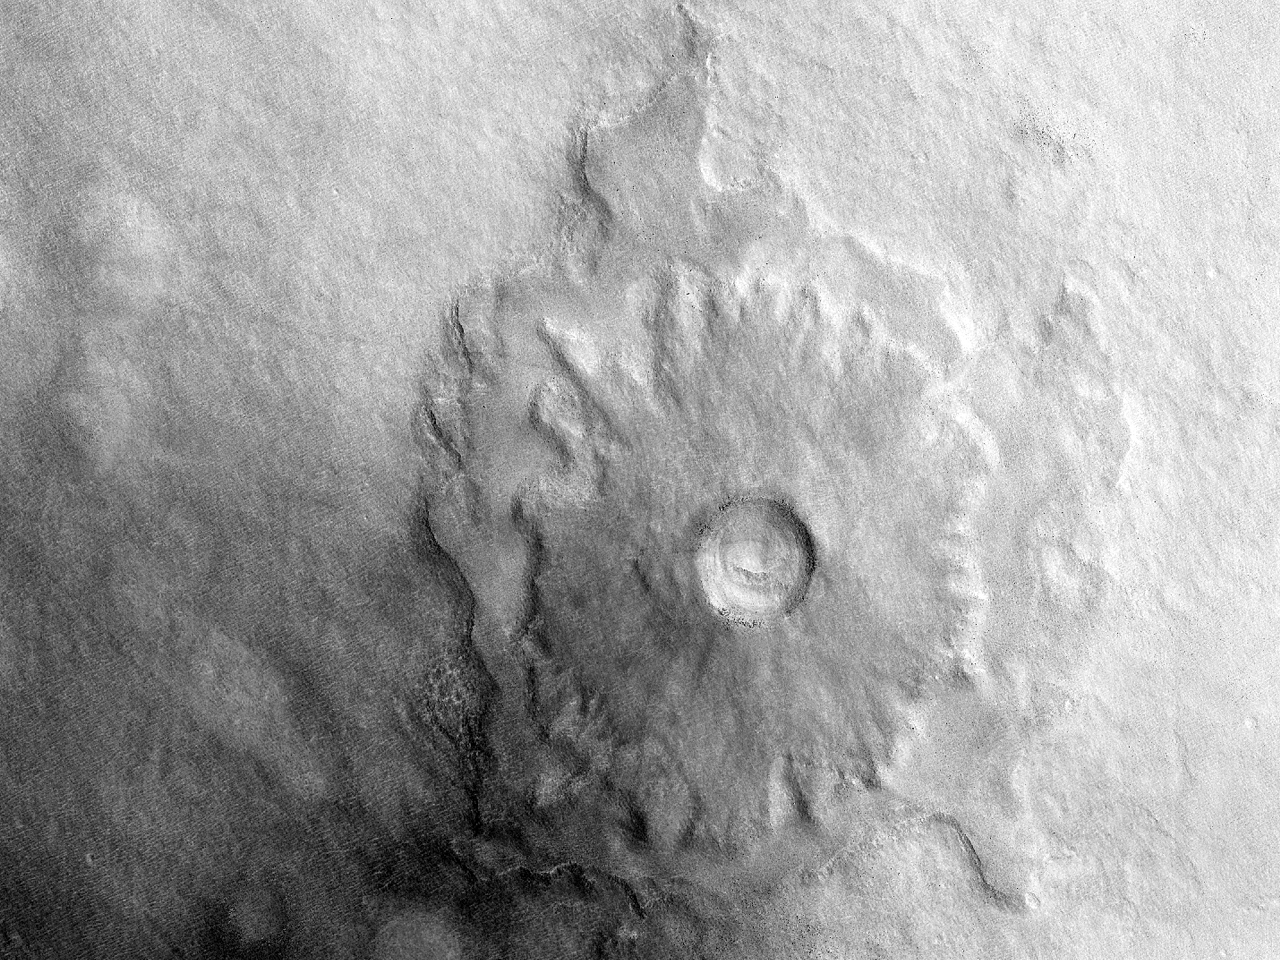 Un cratere a piedestallo a doppia stratificazione